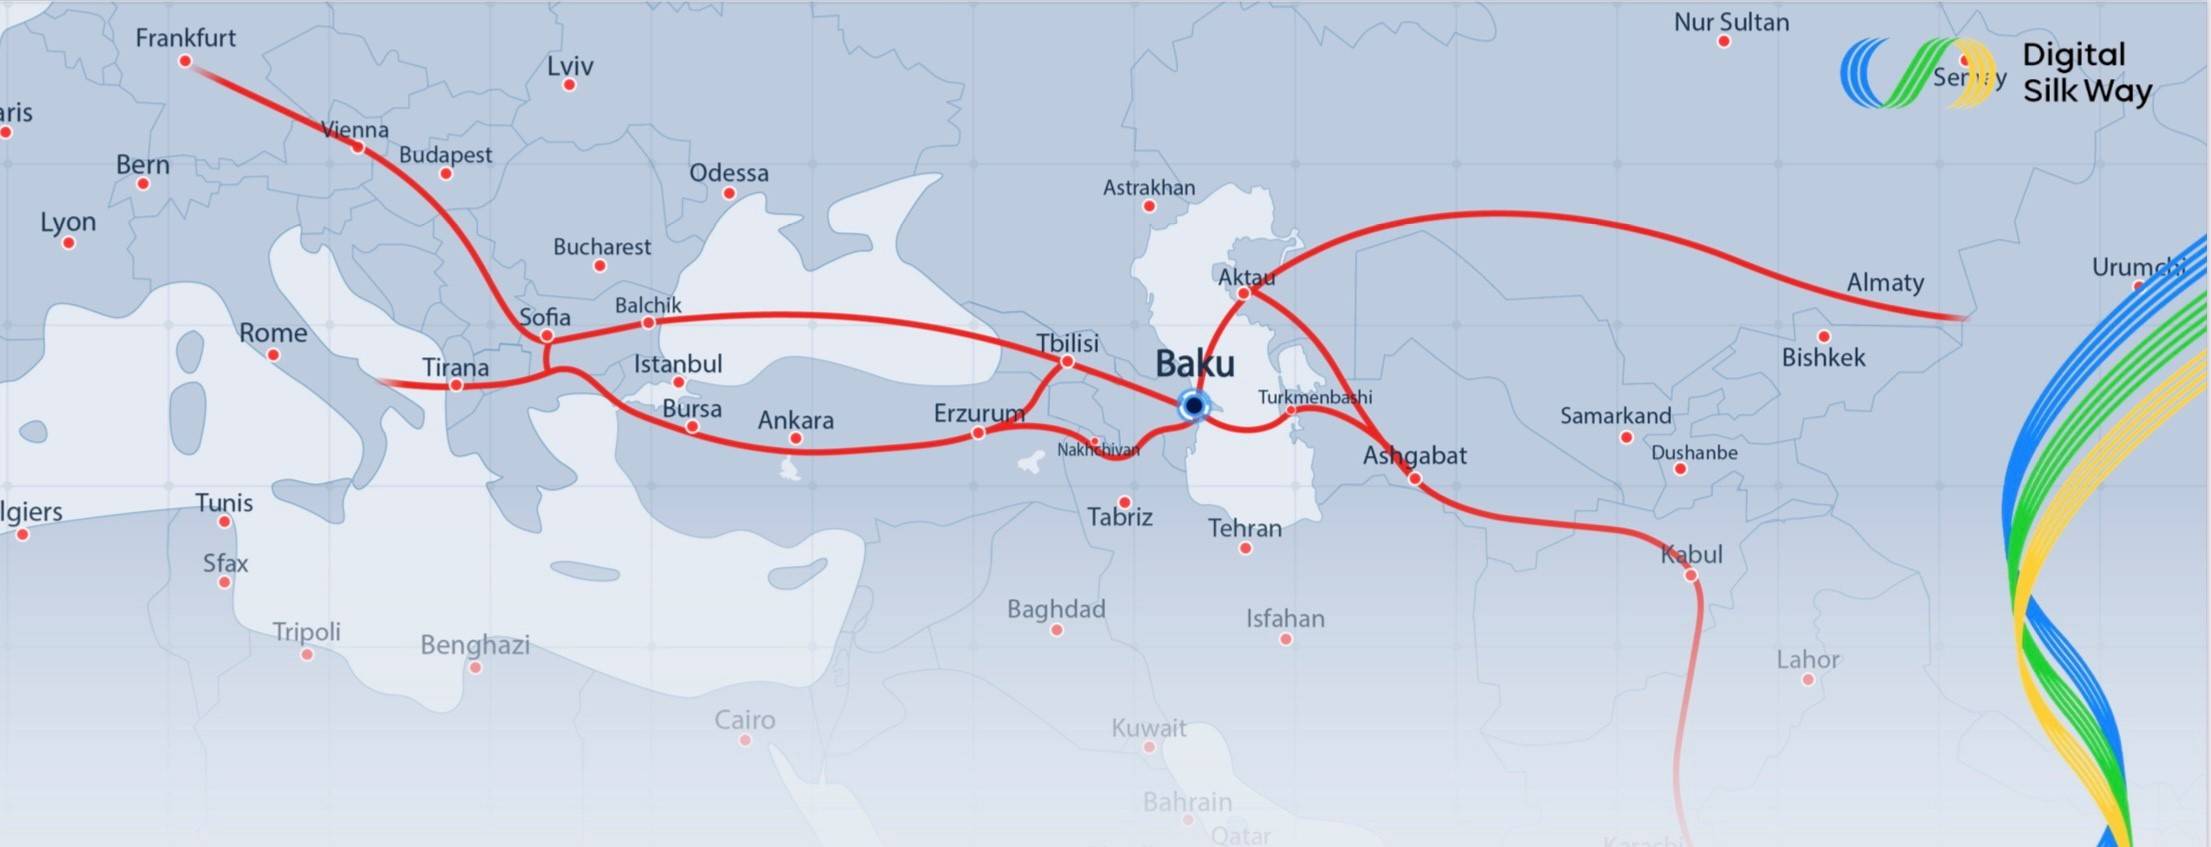 Digital Silk Way Map